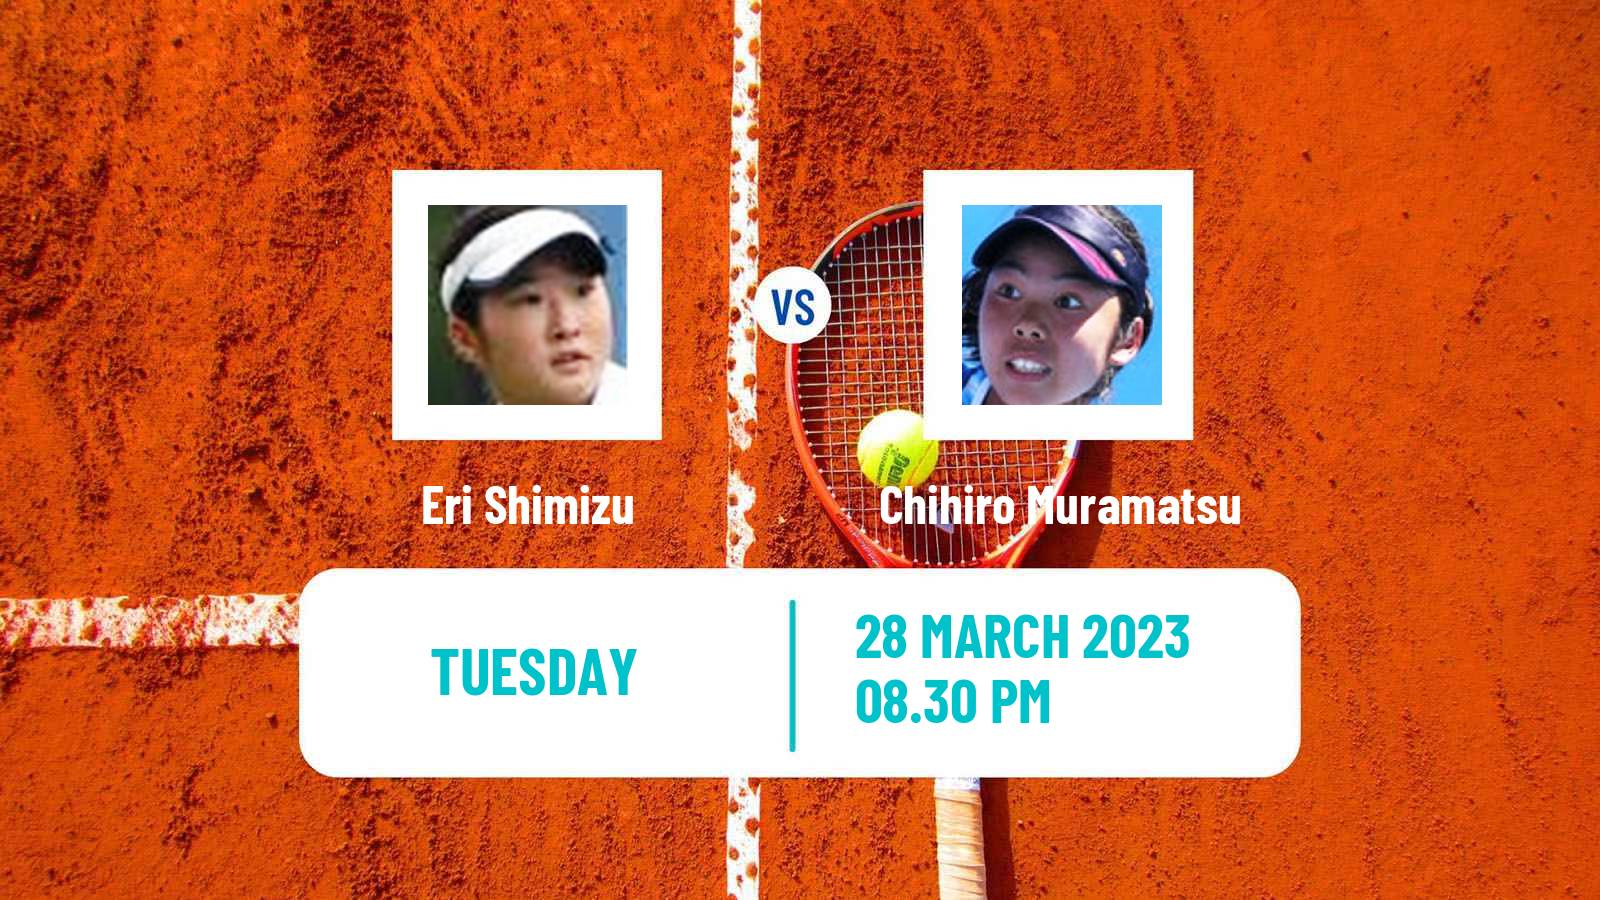 Tennis ITF Tournaments Eri Shimizu - Chihiro Muramatsu